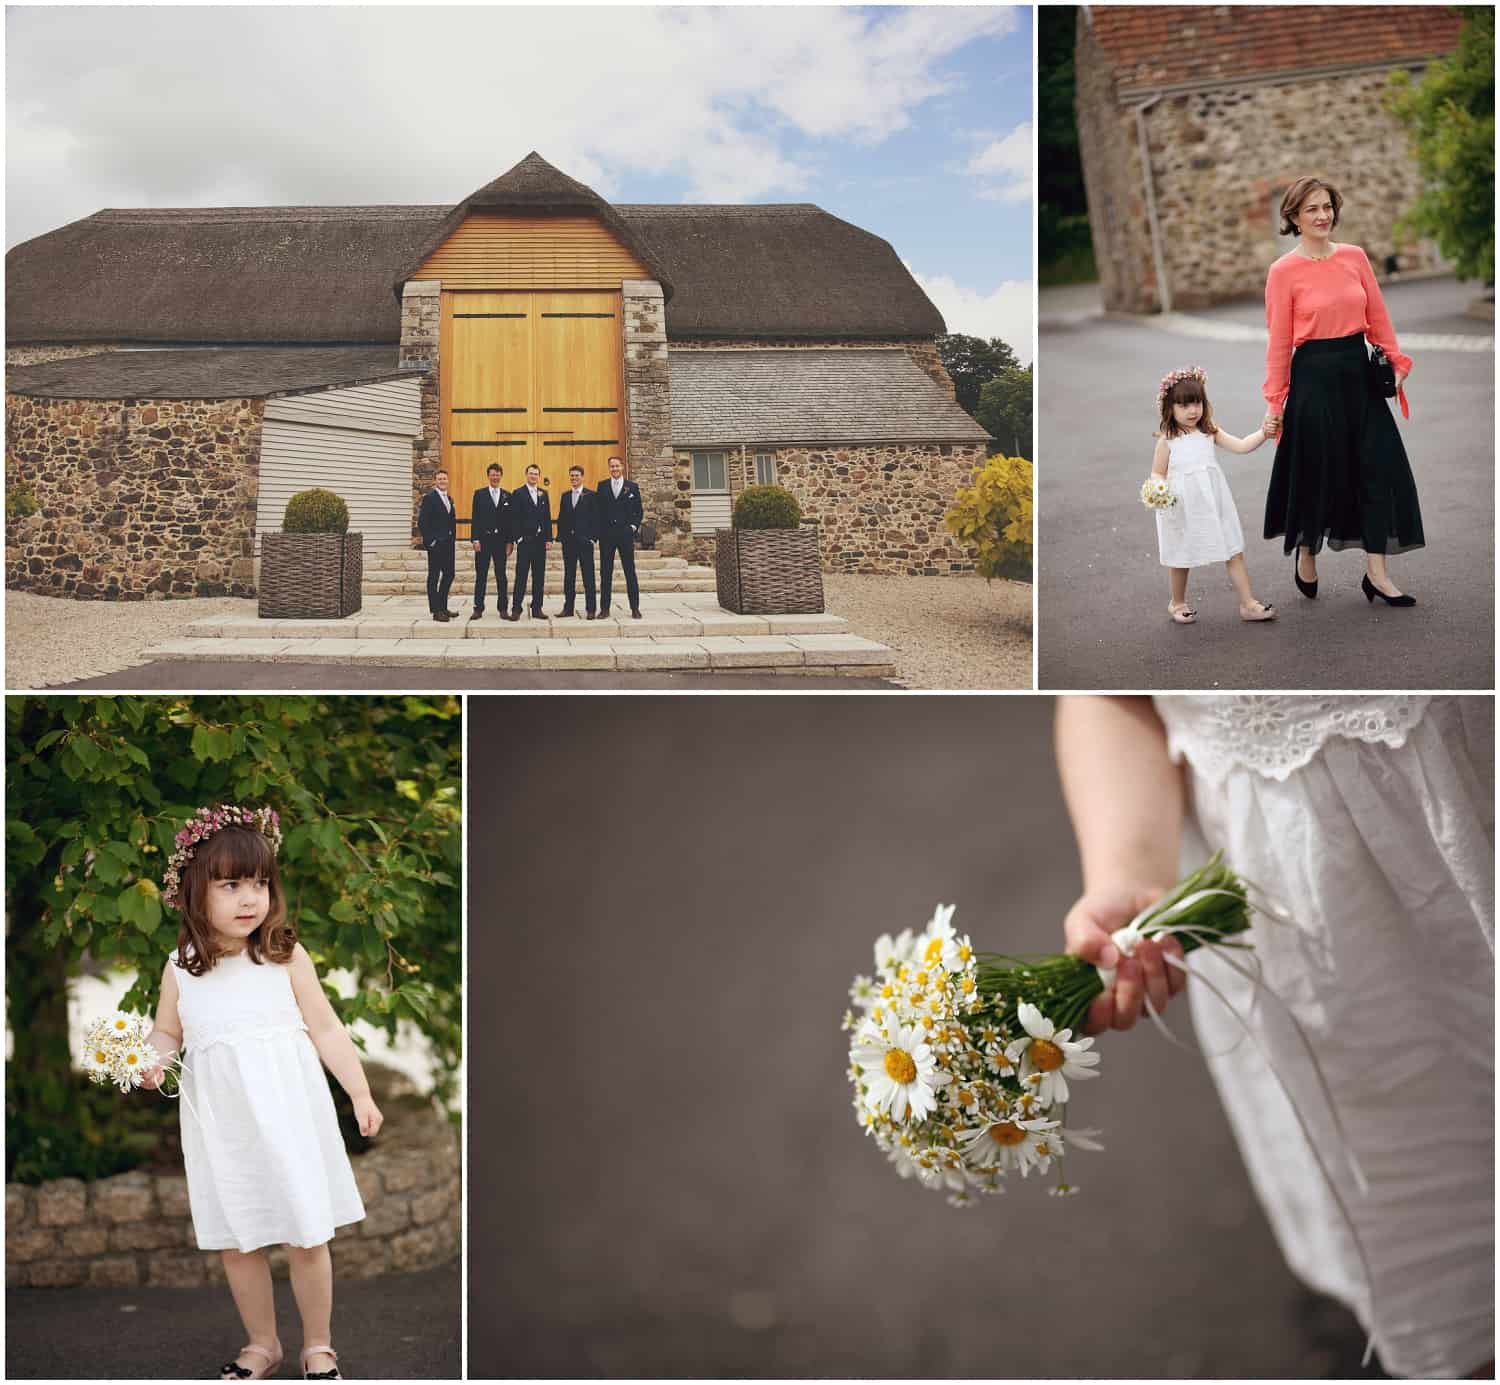 Daisy & Oliver McCann wedding, Great Barn wedding, Devon wedding, barn wedding